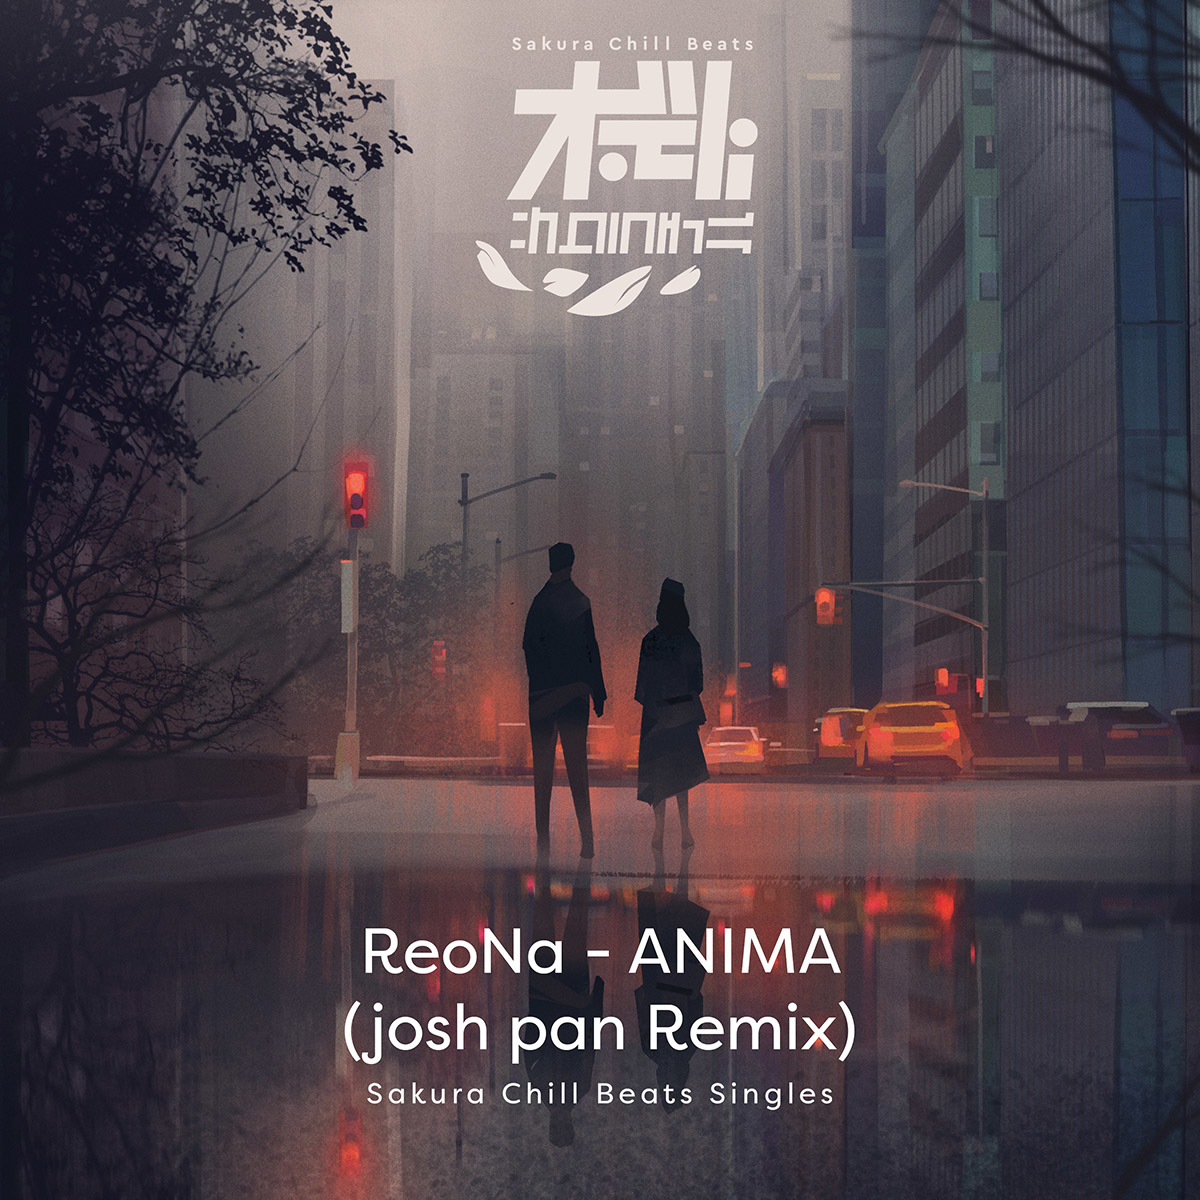 「ANIMA (josh pan Remix) - Sakura Chill Beats Singles」配信ジャケット